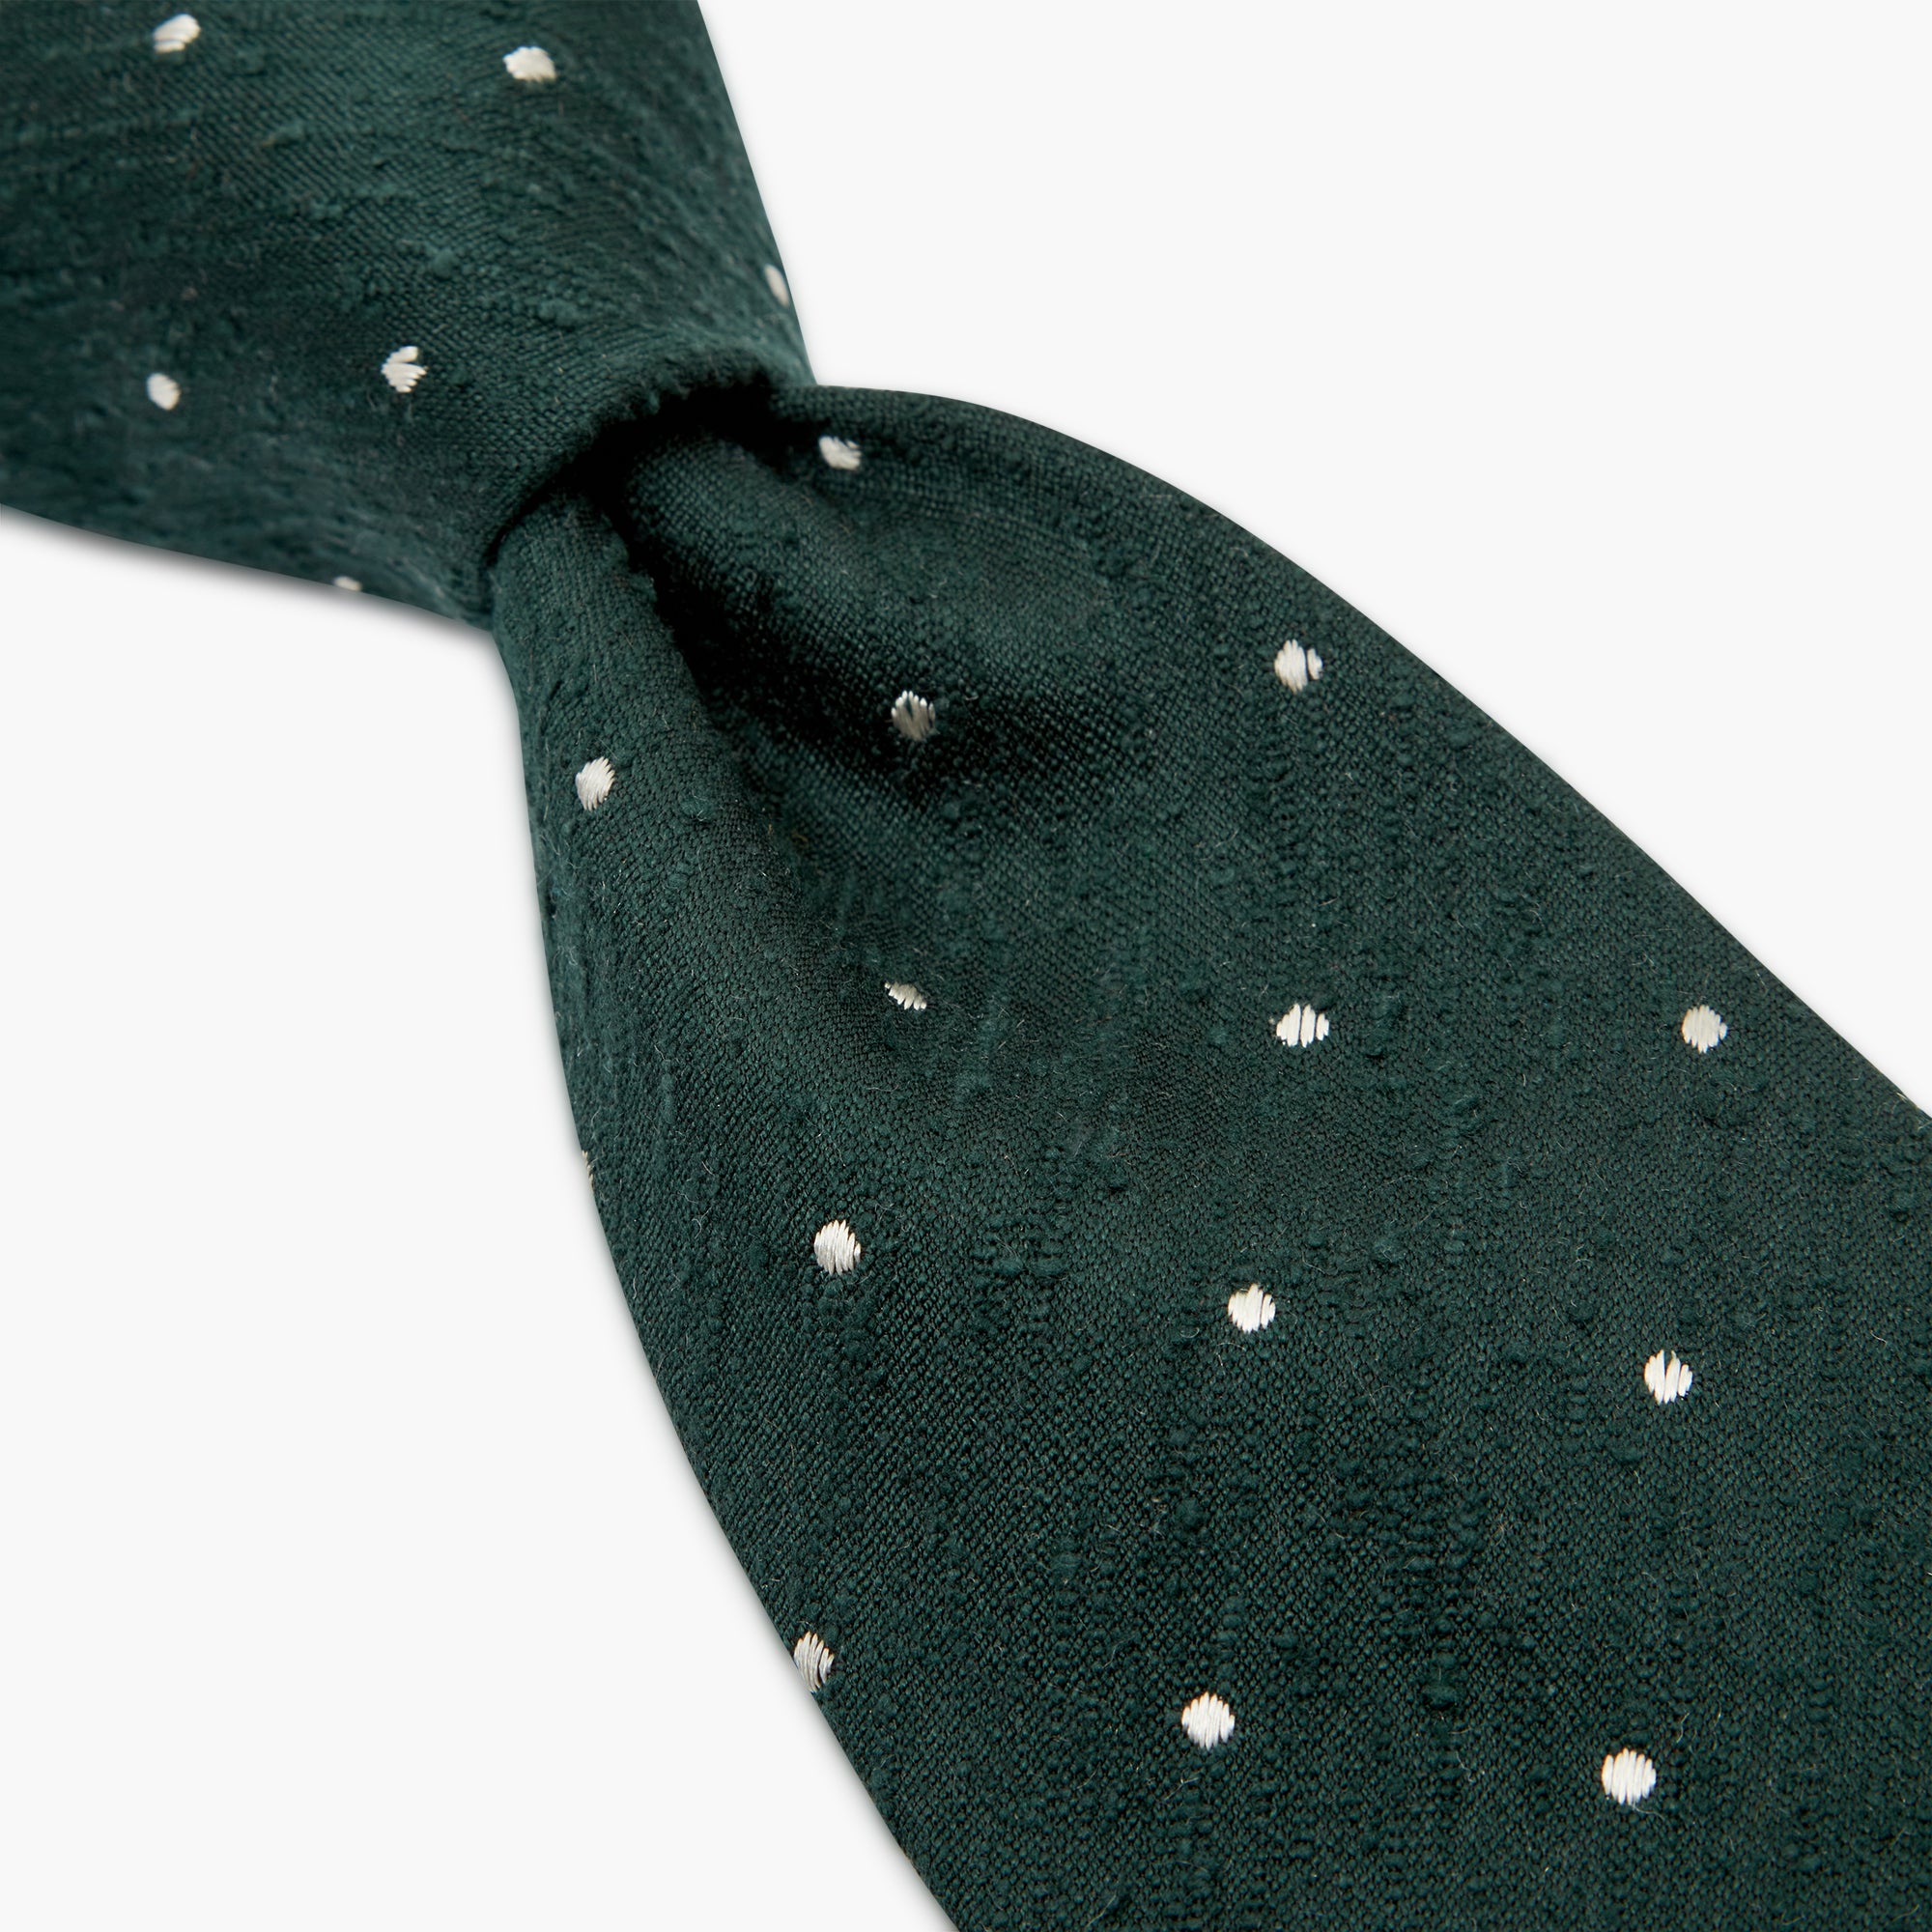 Cravatta 3 Pieghe In Seta Shantung A Pois - Verde Bianco